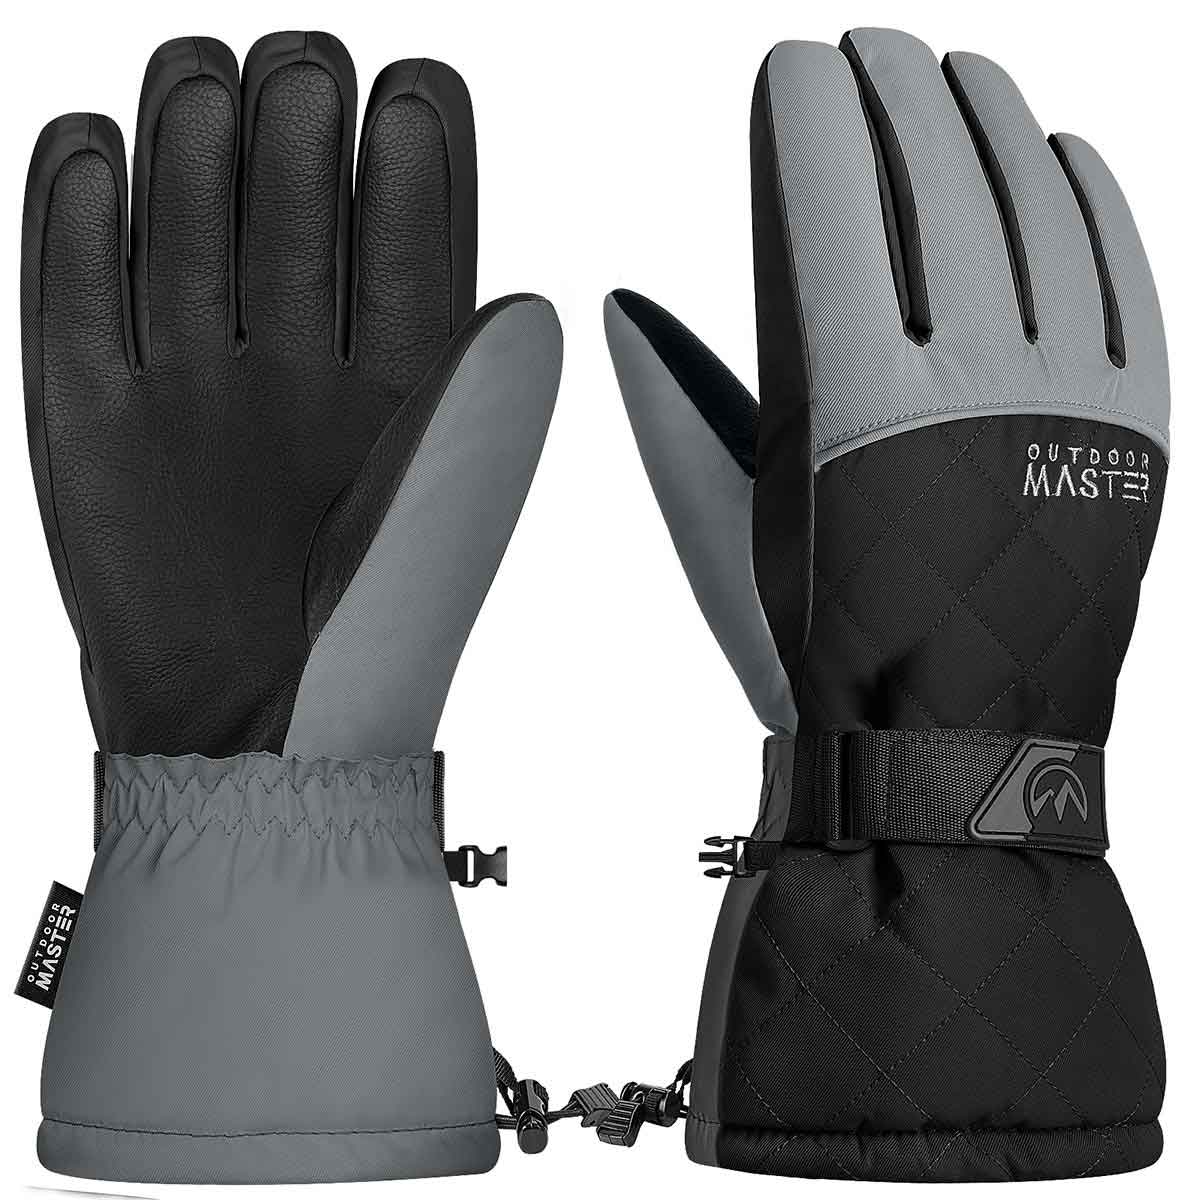 FW98 “Believe” Three Fingered Gloves